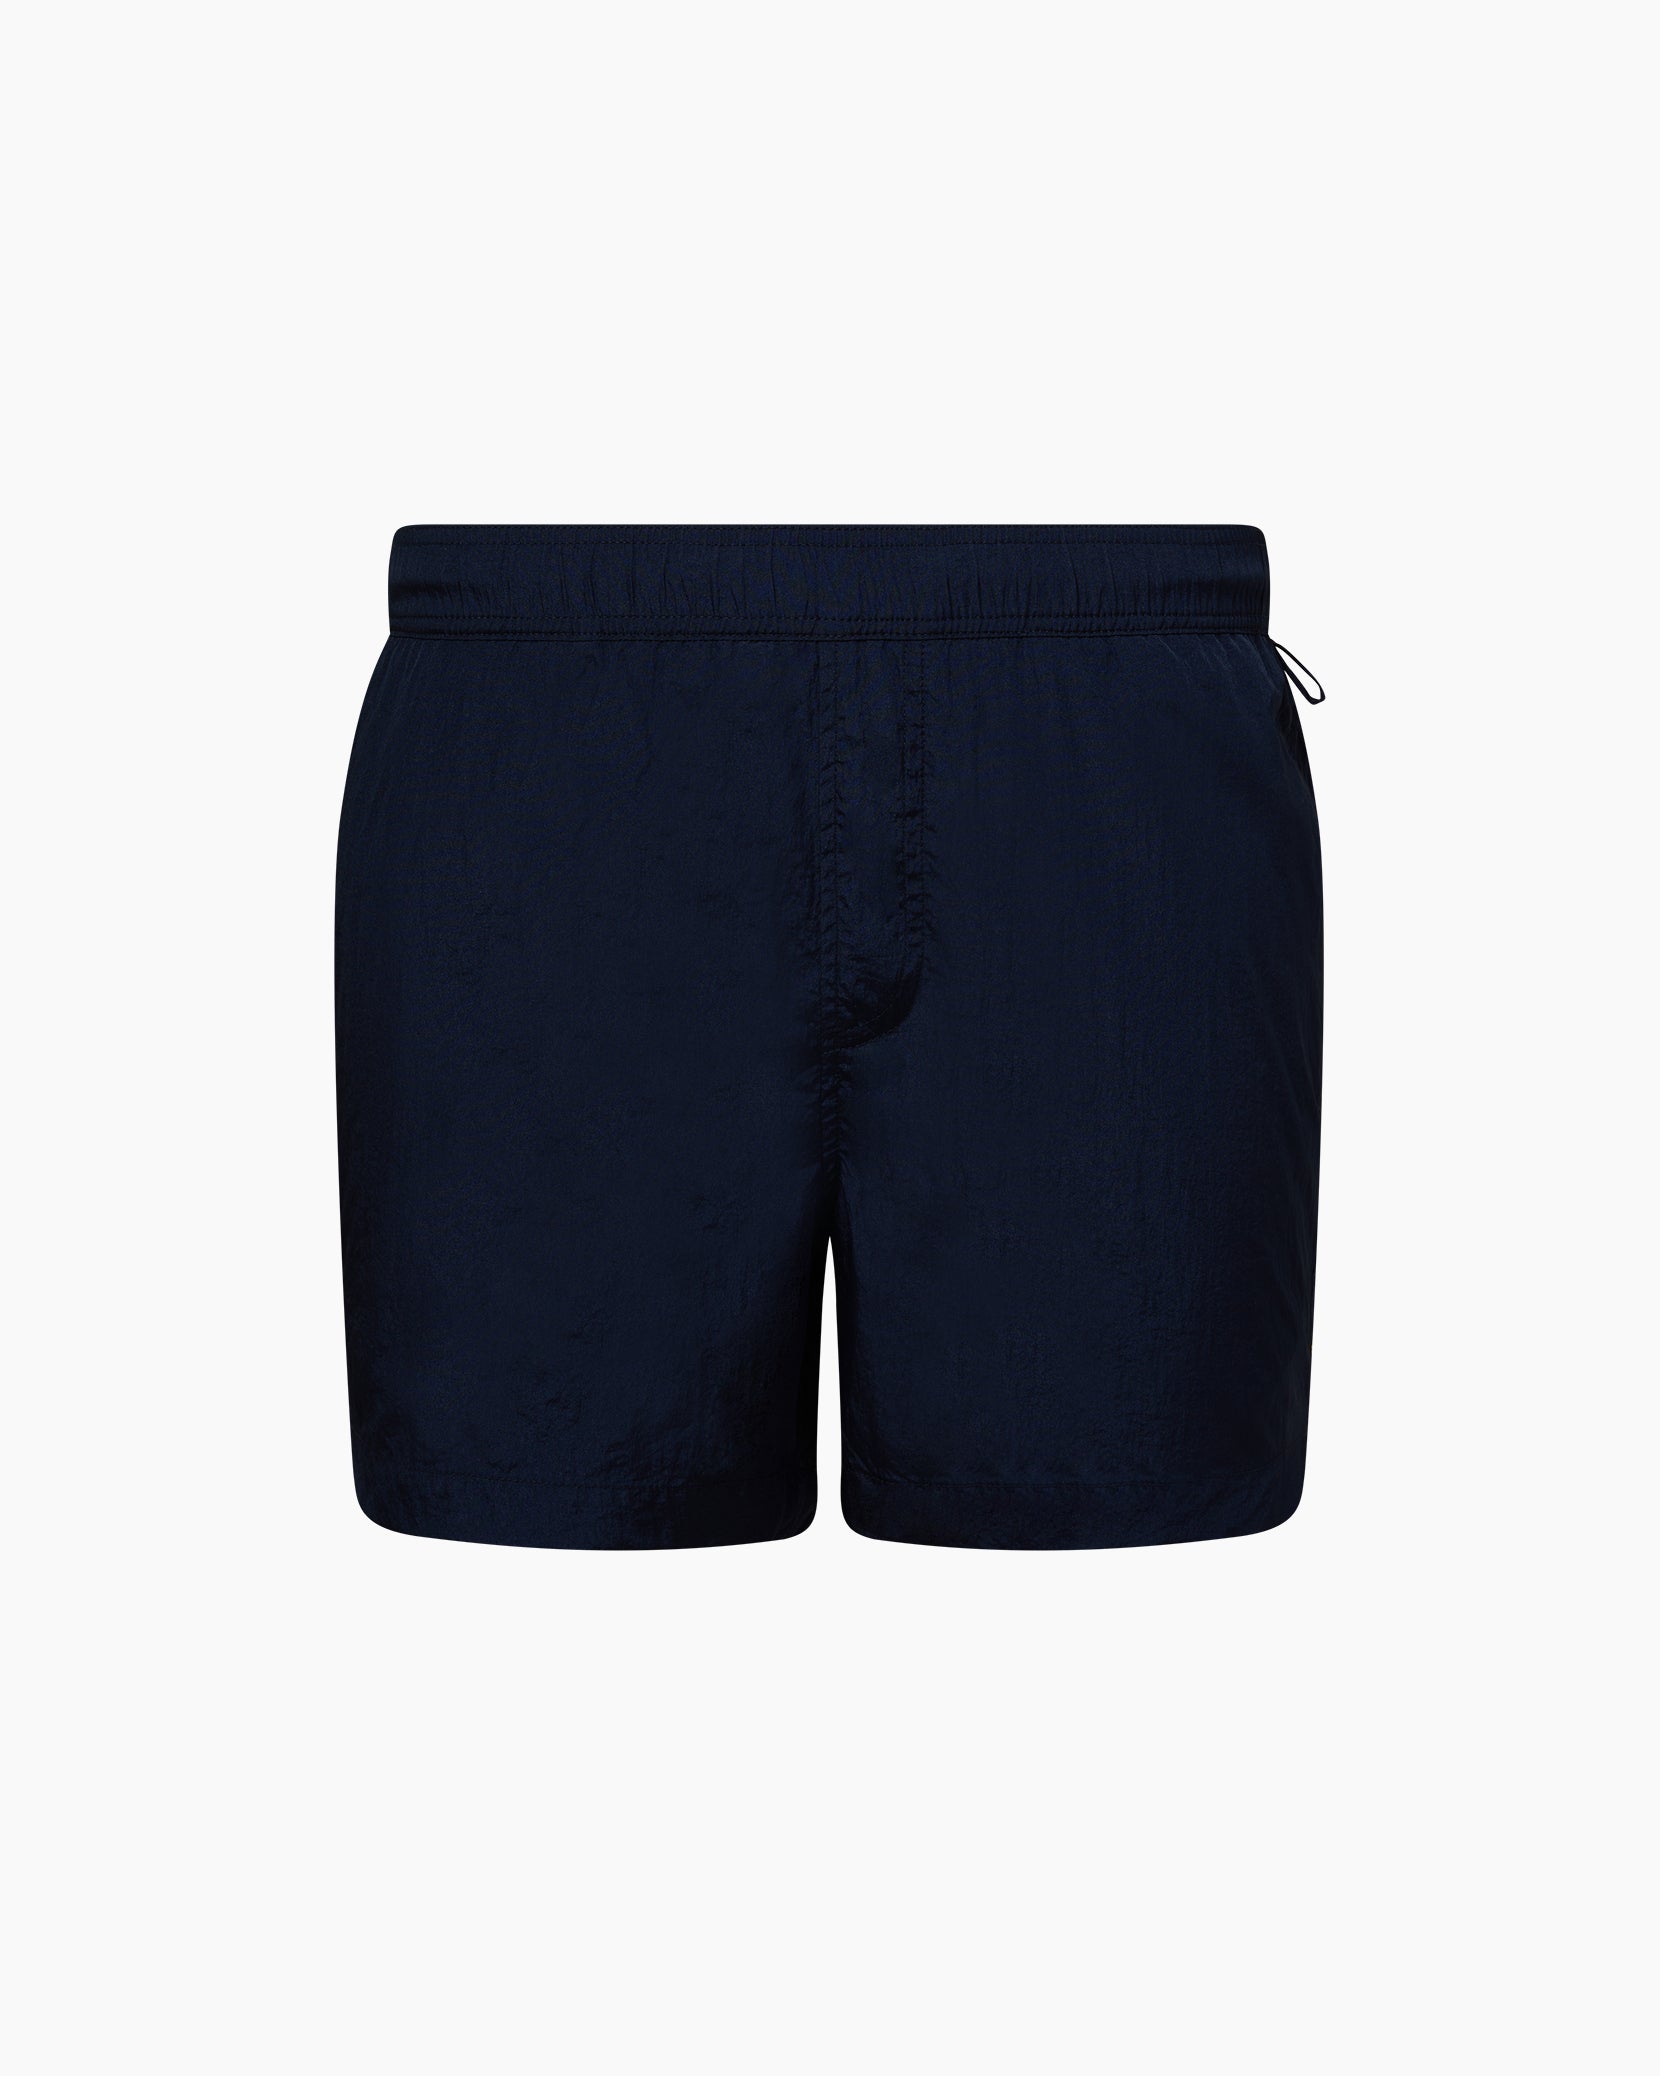 Louis Vuitton Monogram Mens Shorts, Blue, 38